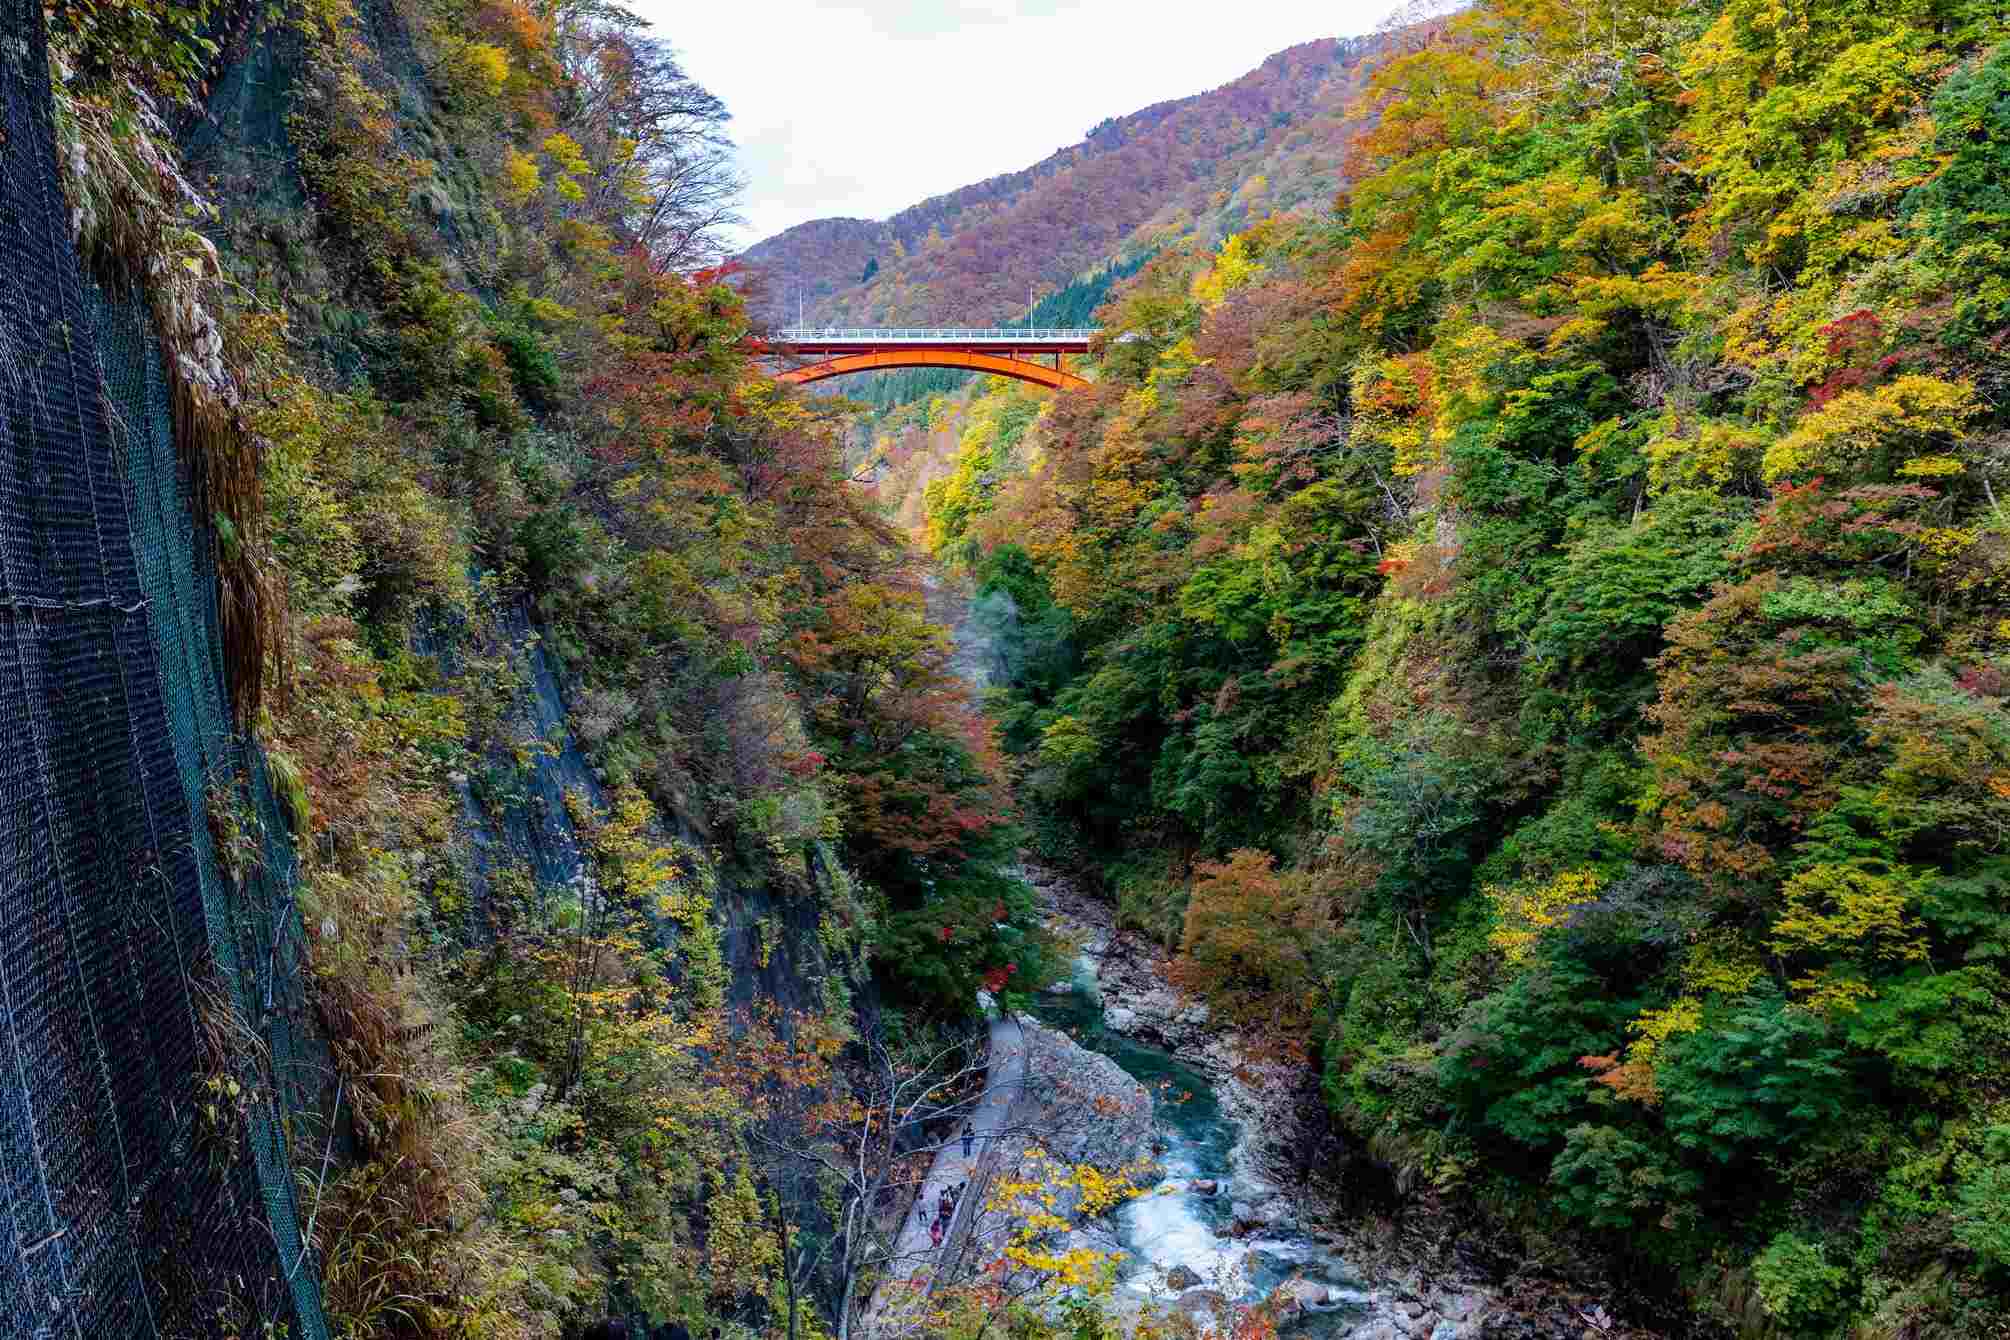 Oyasukyo Onsen and Gorge